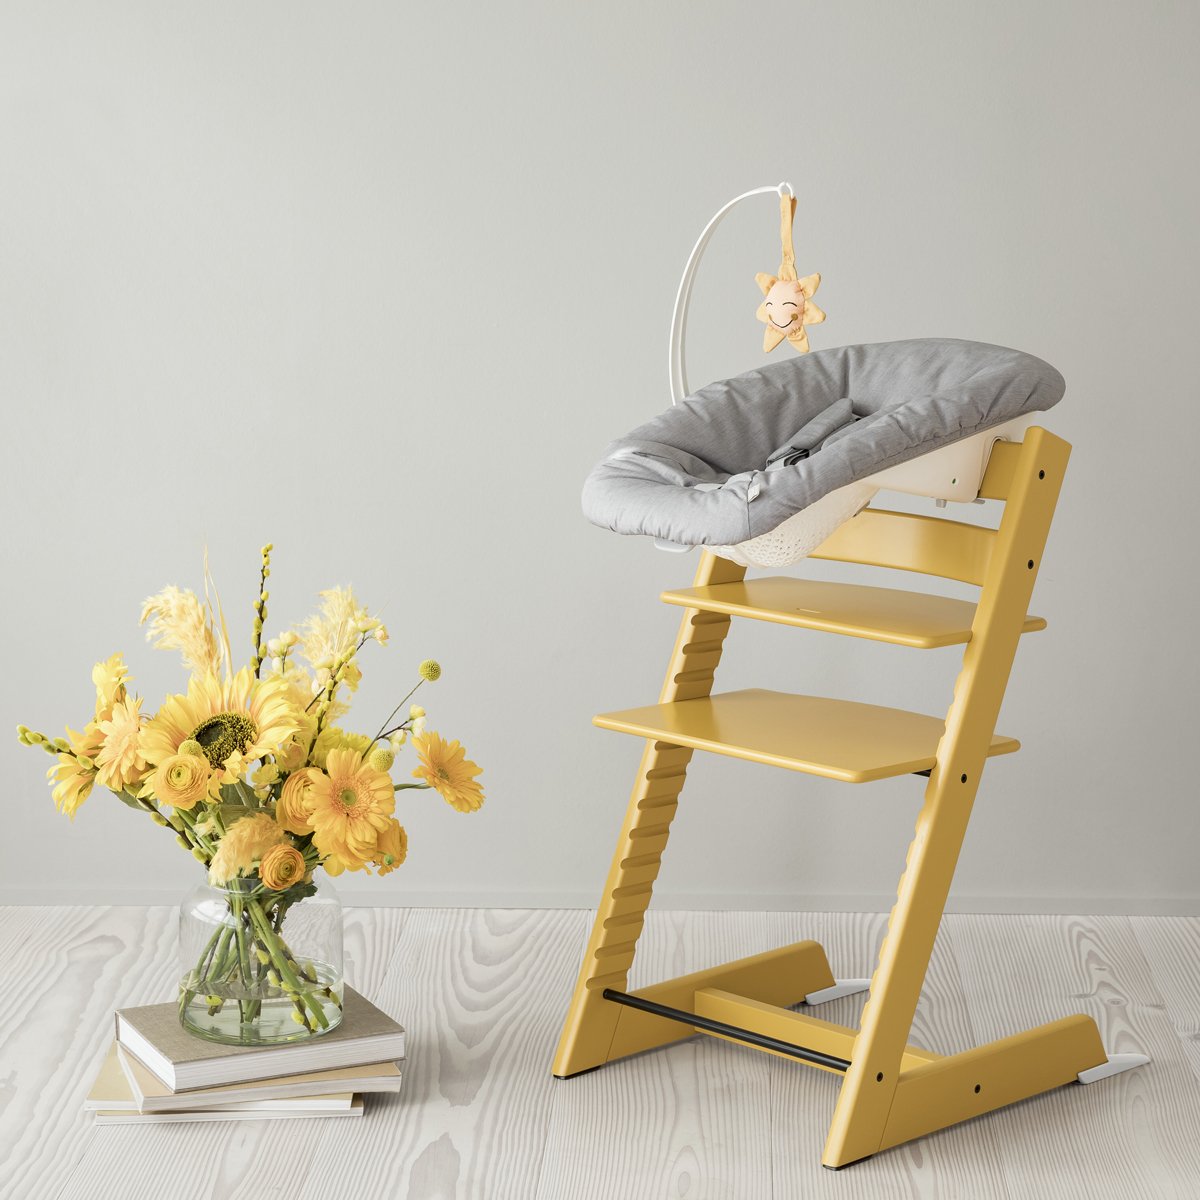 Набір Stokke Newborn Tripp Trapp Sunflower Yellow: стільчик і крісло для новонароджених (k.100137.52) - фото 7